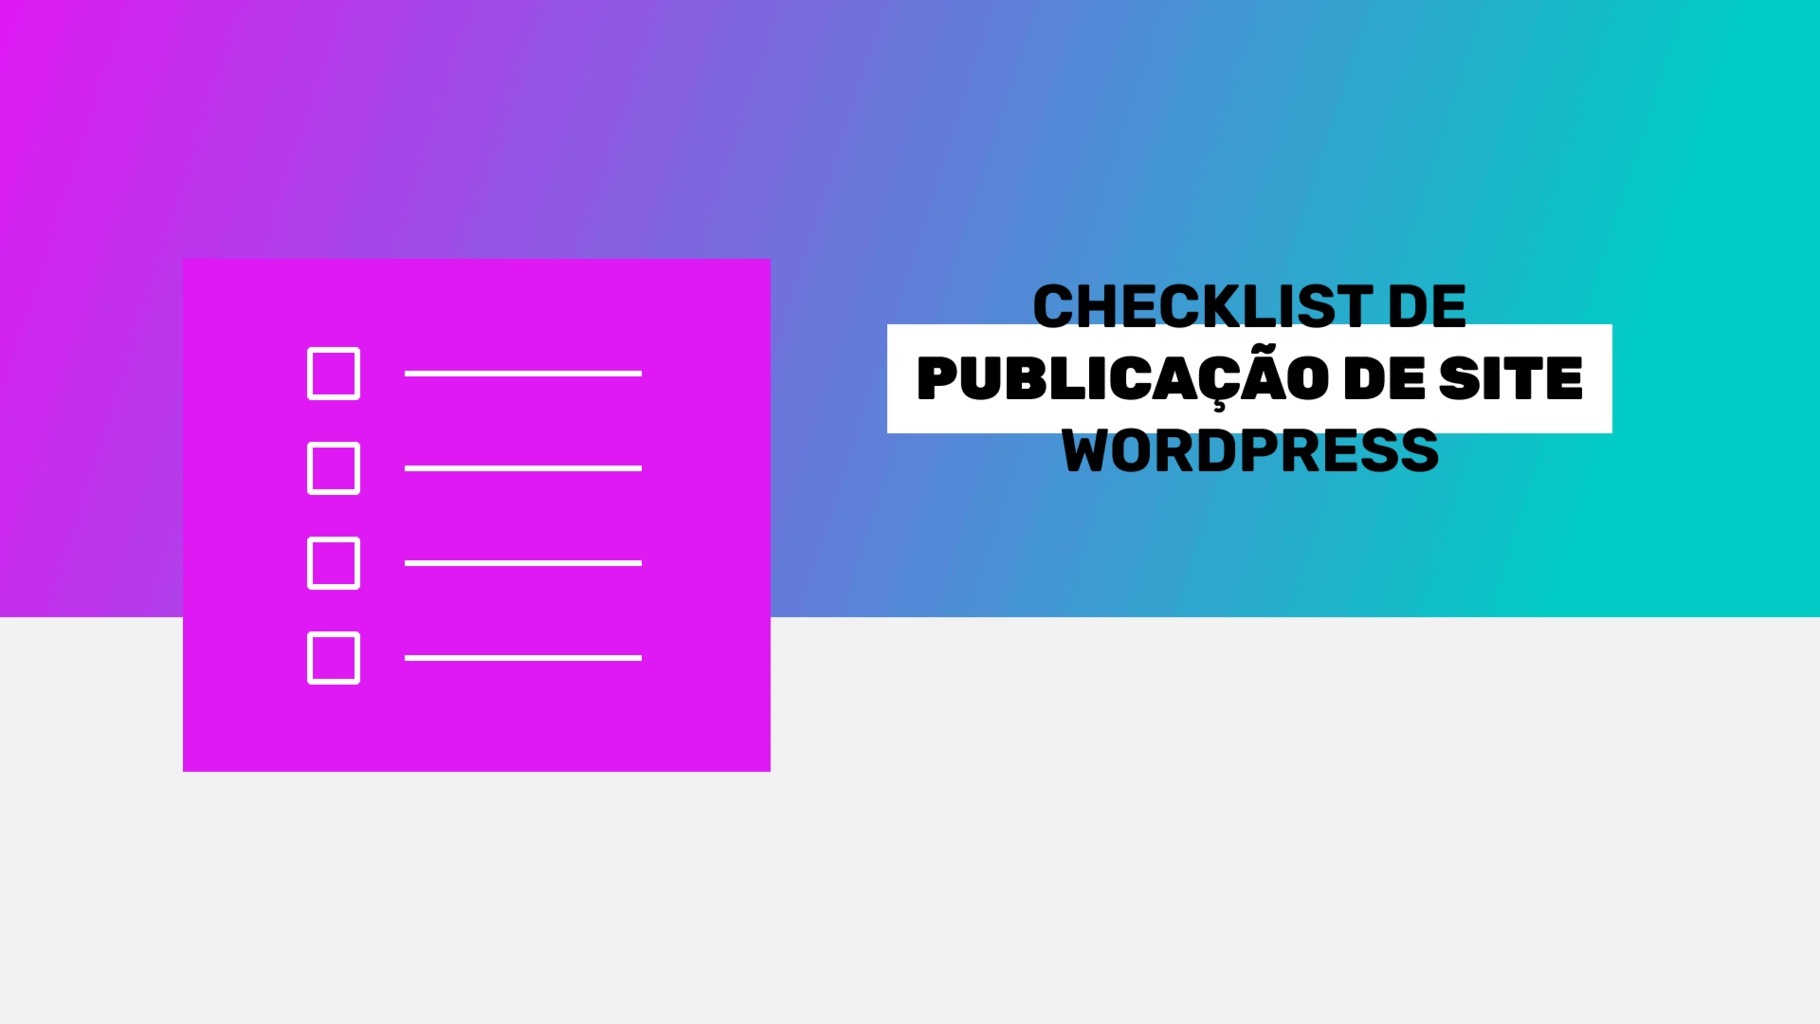 Checklist de publicação de site WordPress